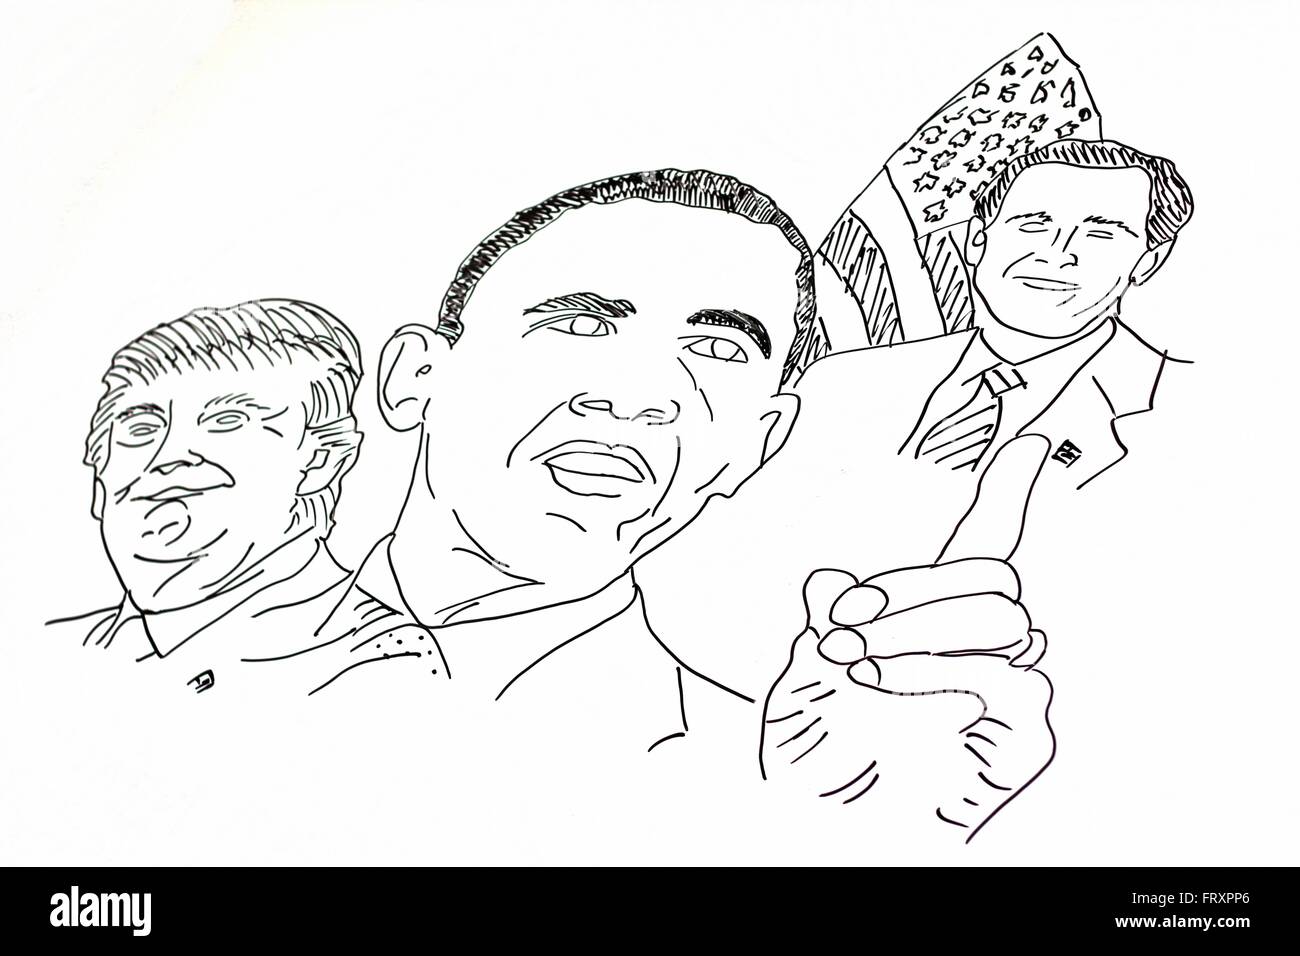 Un dessin à la main des politiciens américains Banque D'Images